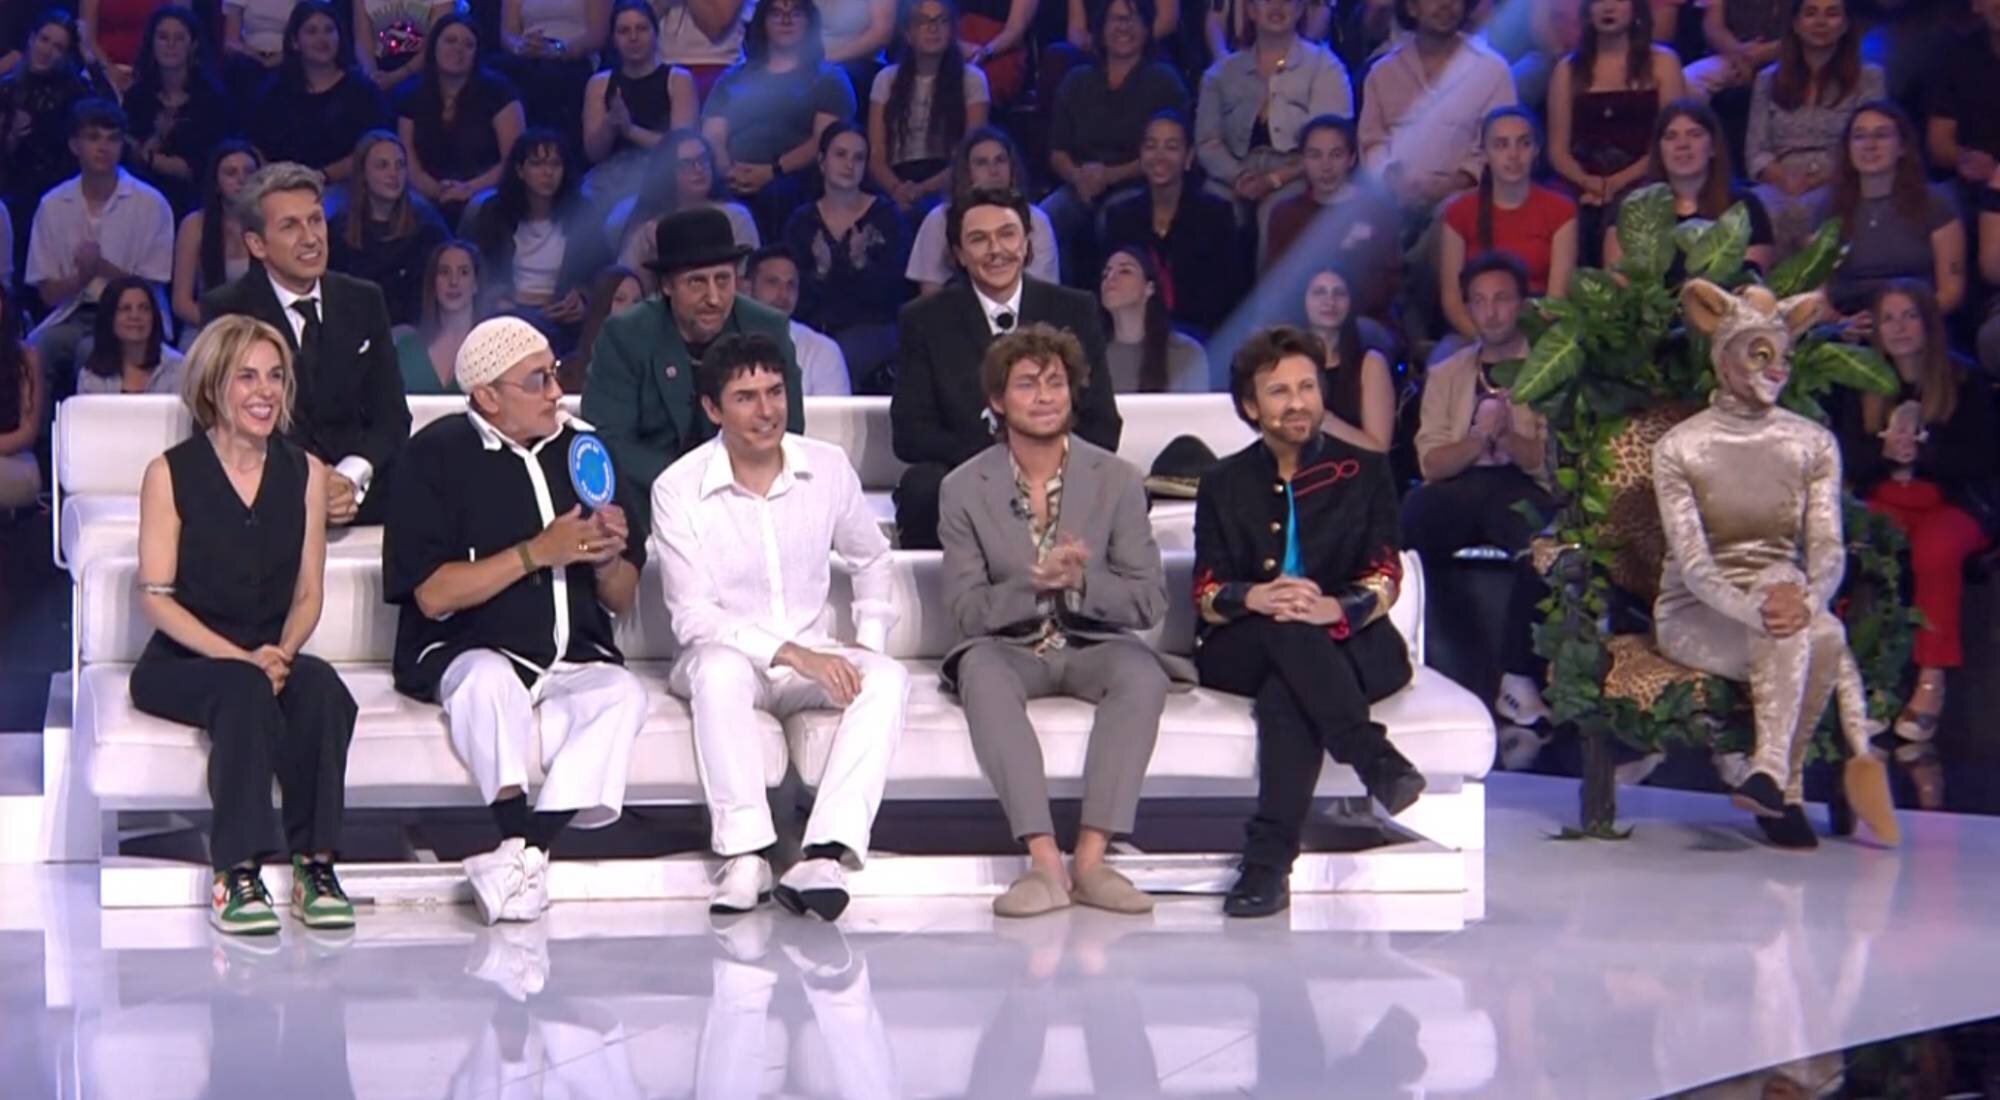 Los concursantes de 'Tu cara me suena 11', a excepción de Valeria Ros, junto a David Fernández en la gala 11